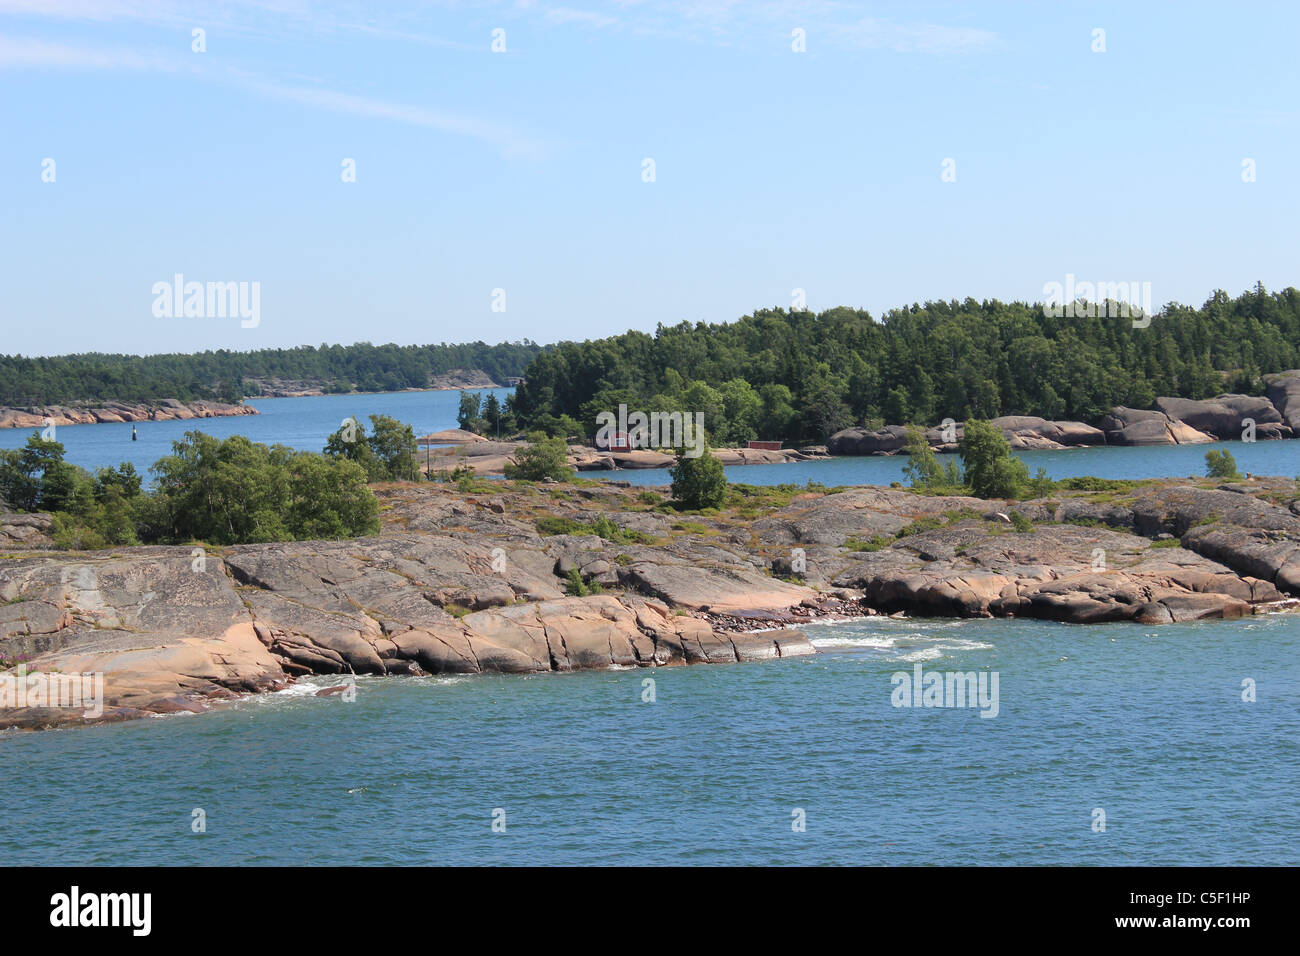 Archipel von Åland (Ahvenanmaa ) die Åland-Inseln sind autonom, entmilitarisiert und die einzige monolingual schwedischsprachige Region Finnlands. Stockfoto